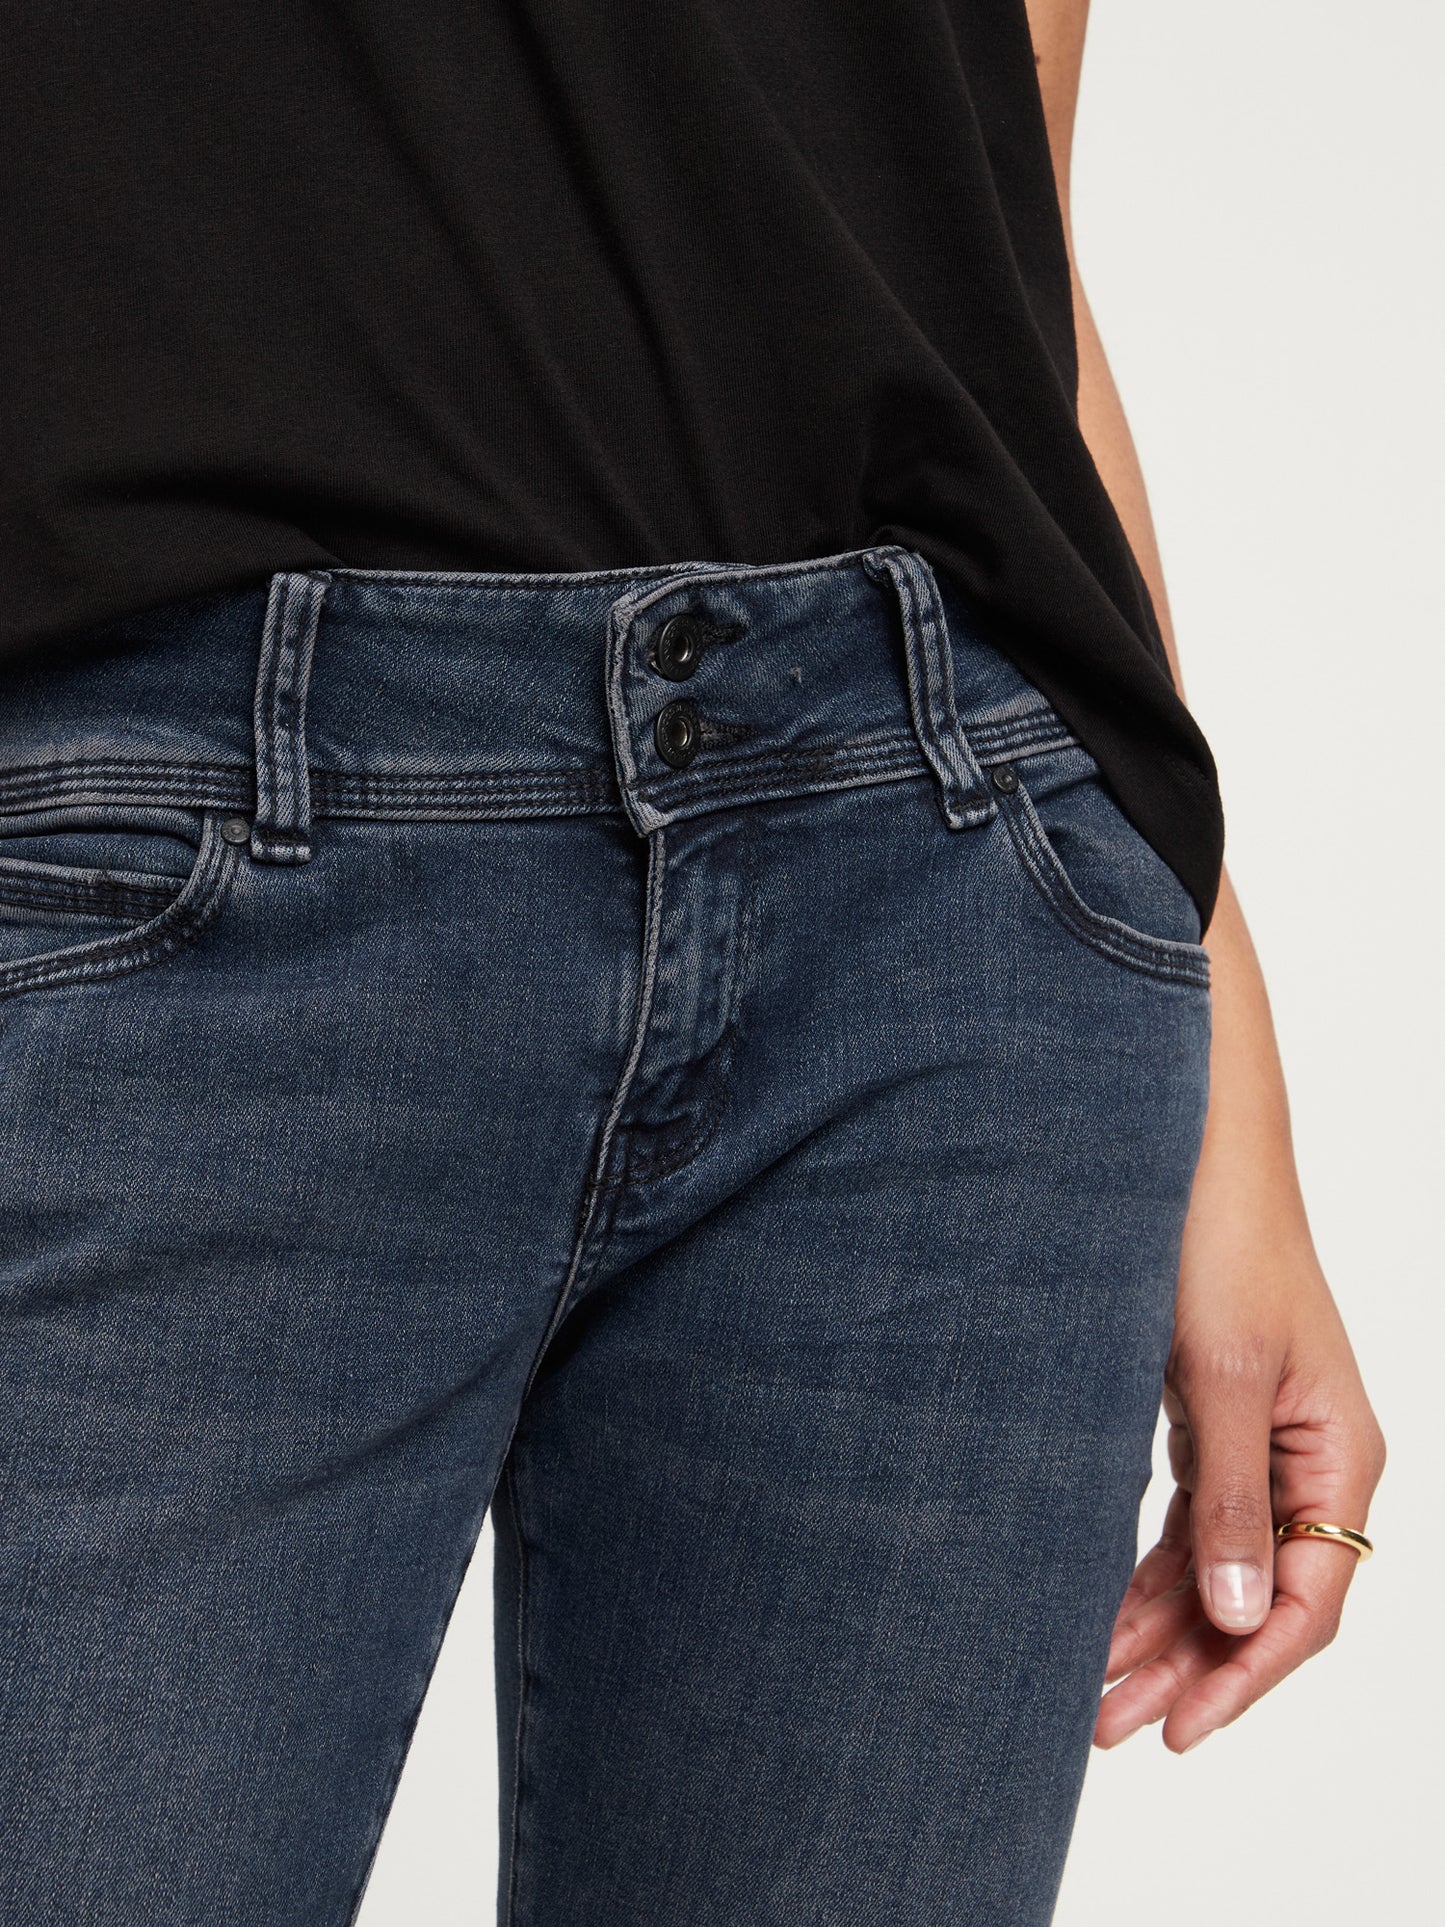 Loie Damen Jeans Regular Fit Mid Waist Straight Leg schwarzblau